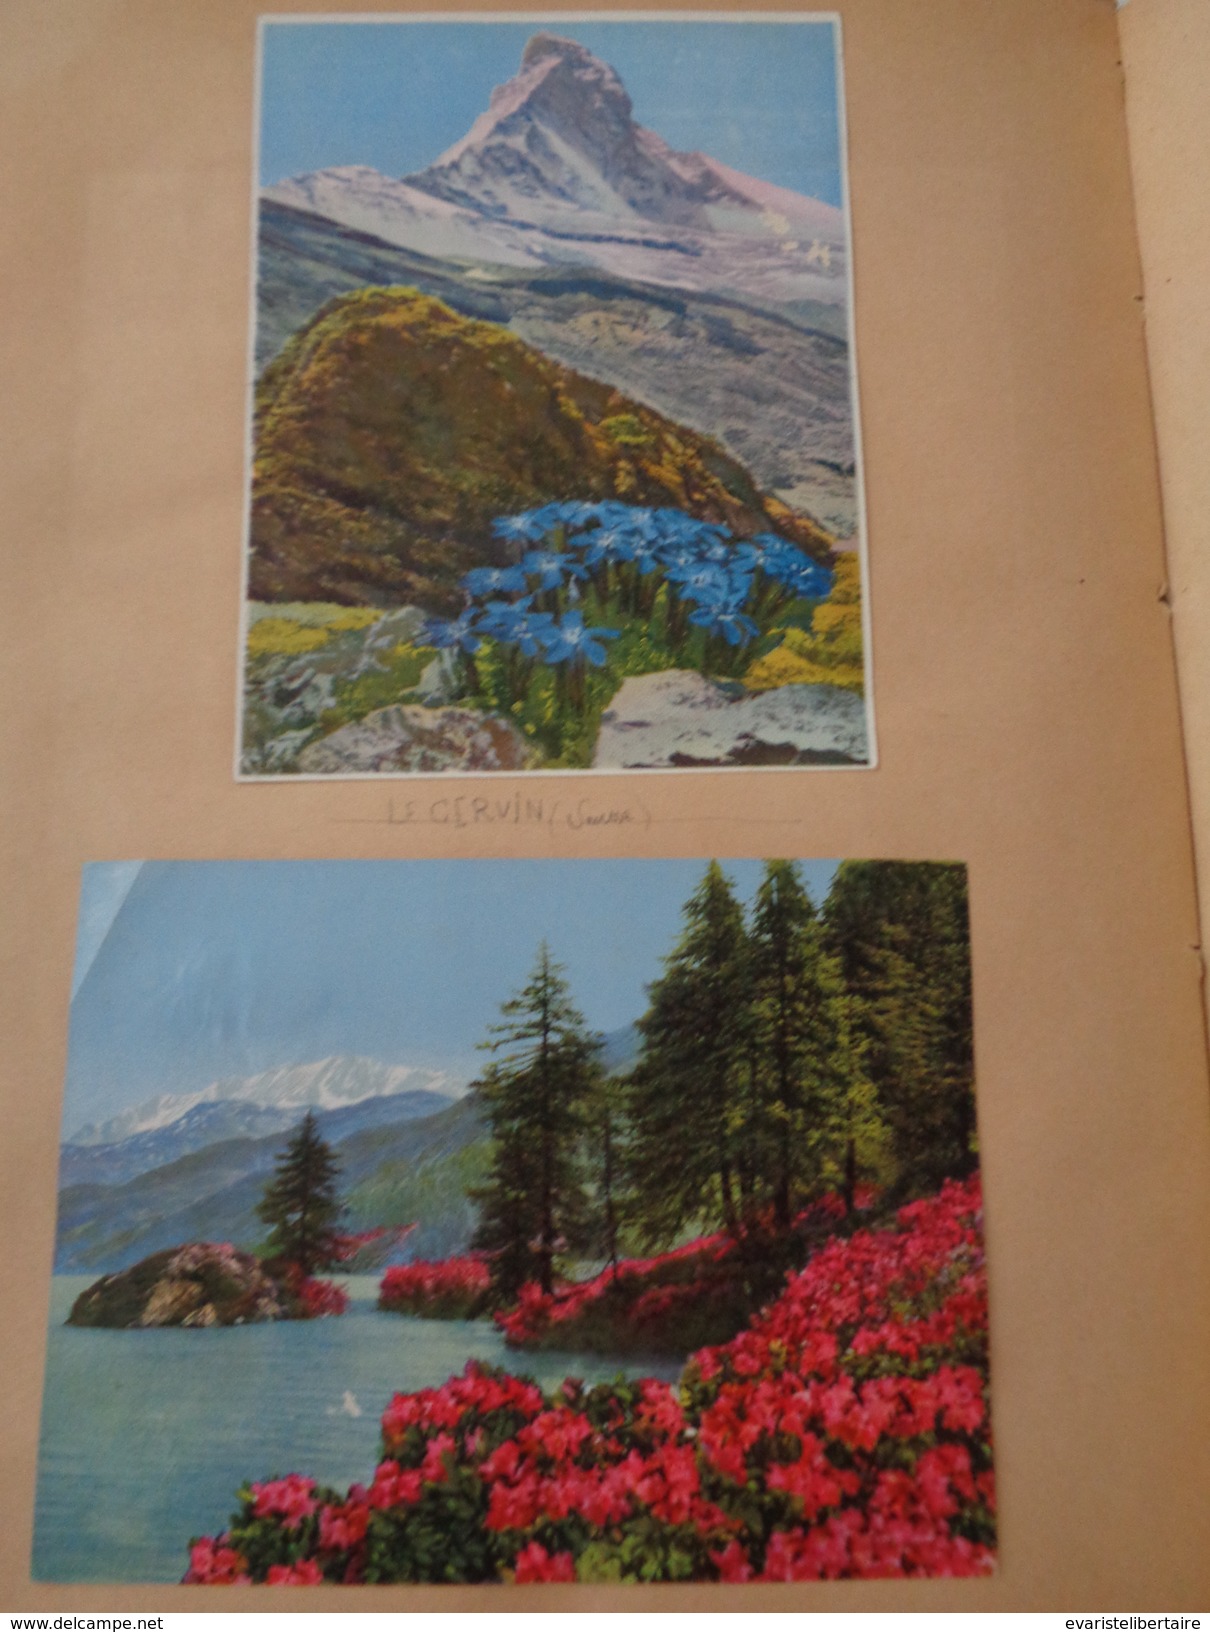 Album /cartes postales,photos de la Haute SAVOIE ,ALPES MARITIMES ,179 cartes et photos